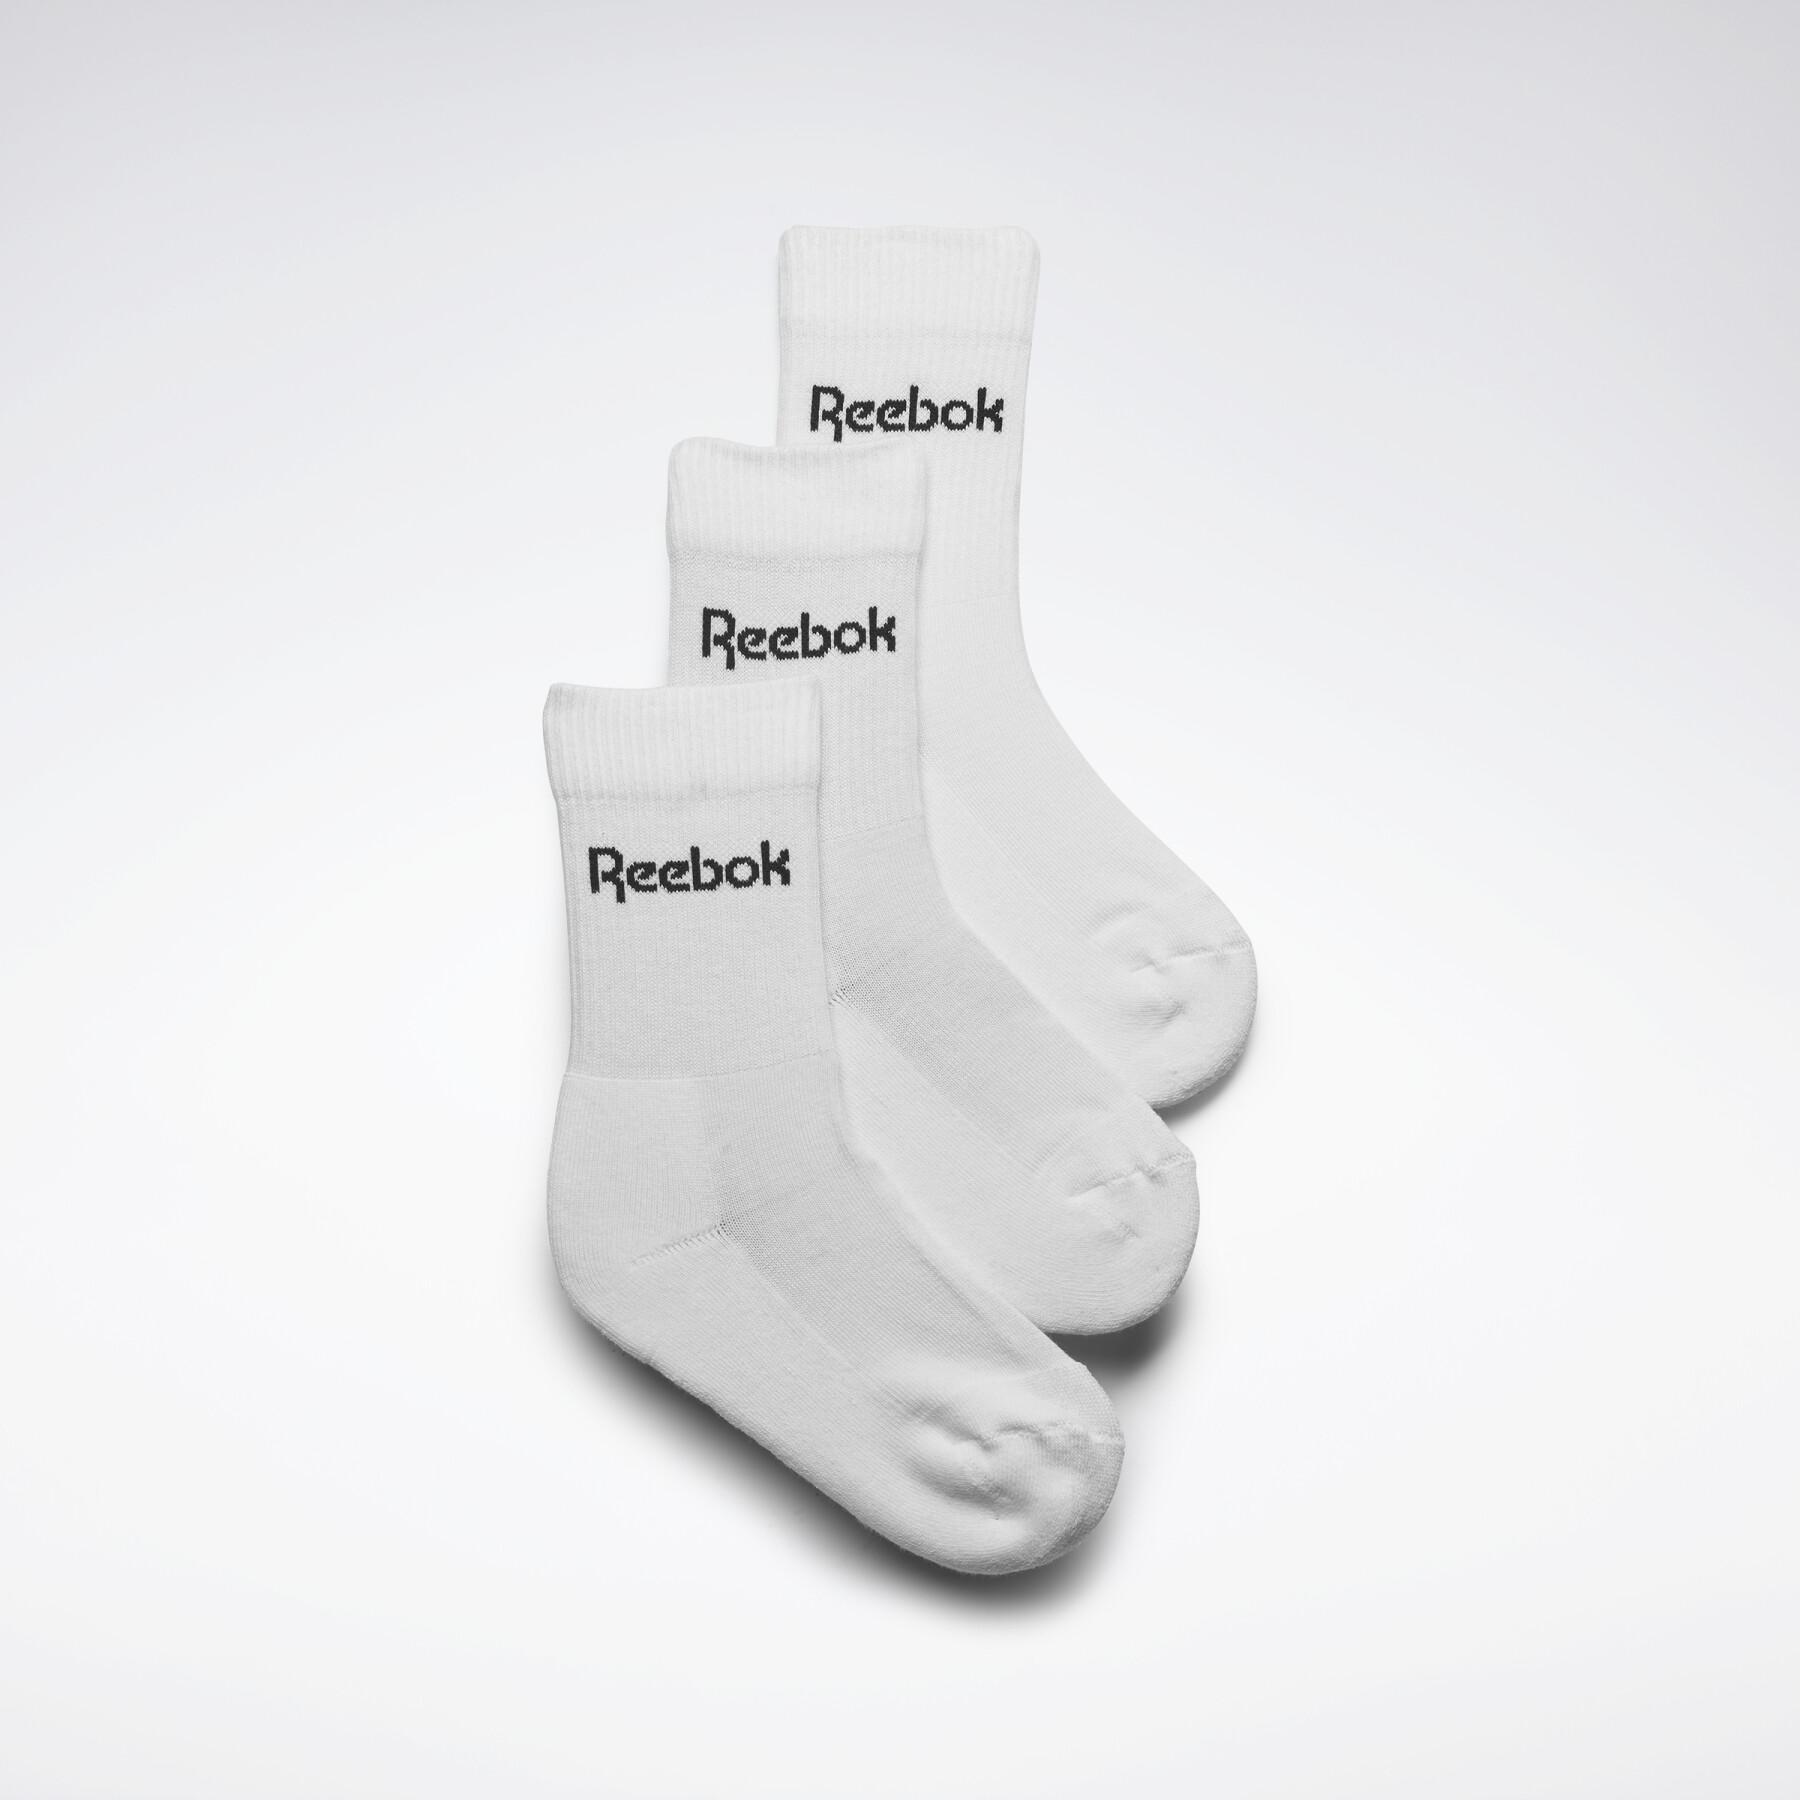 Juego de 3 pares de calcetines para niños Reebok